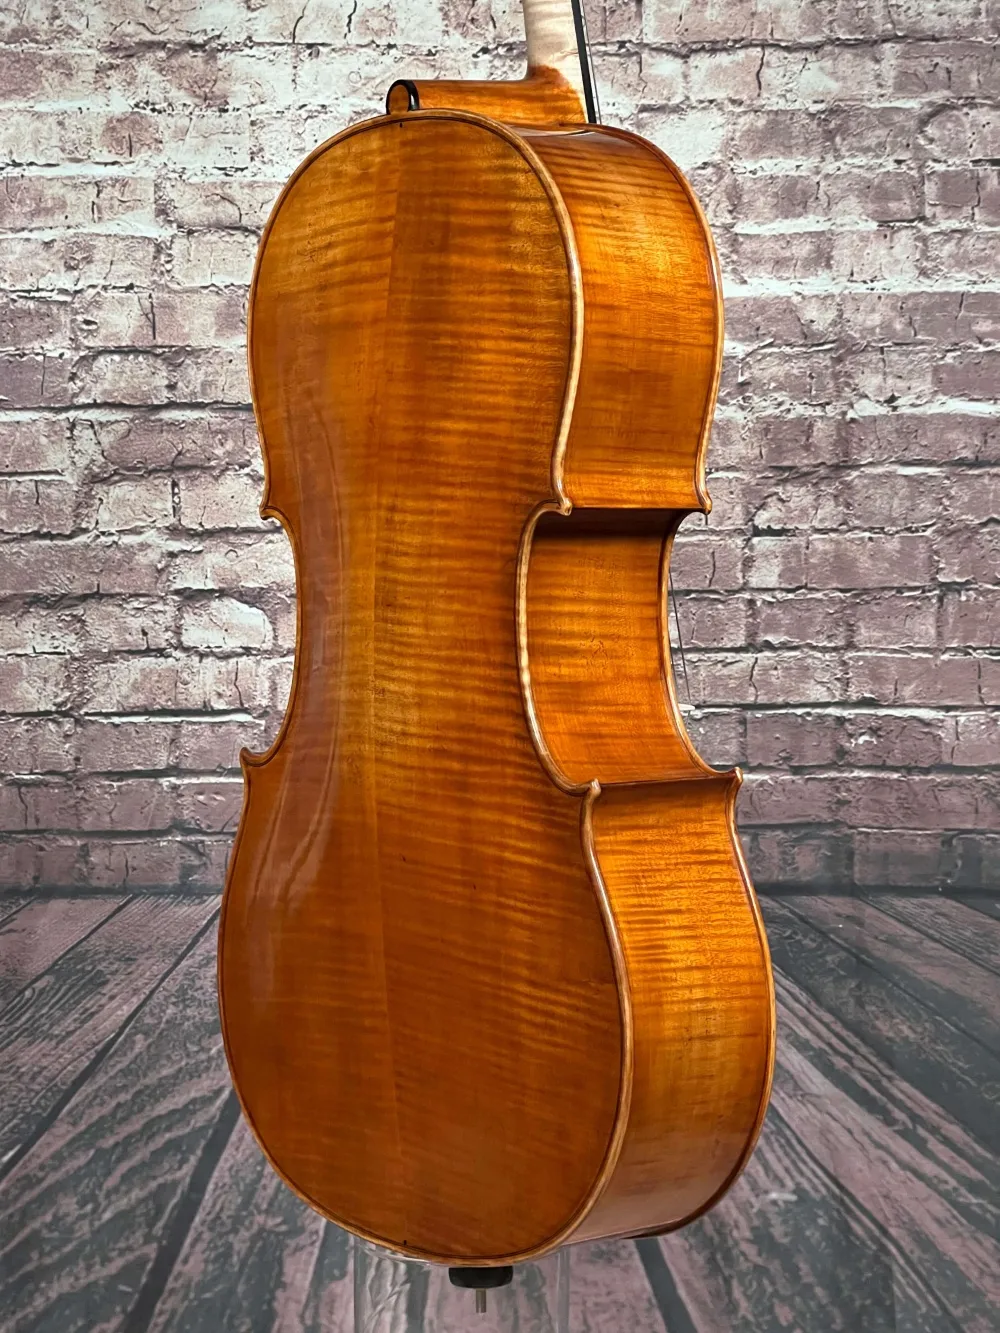 Boden-Seite-Detailansicht eines Stoica Alin di Bottega Cello Handarbeit aus Siebenbürgen 2022